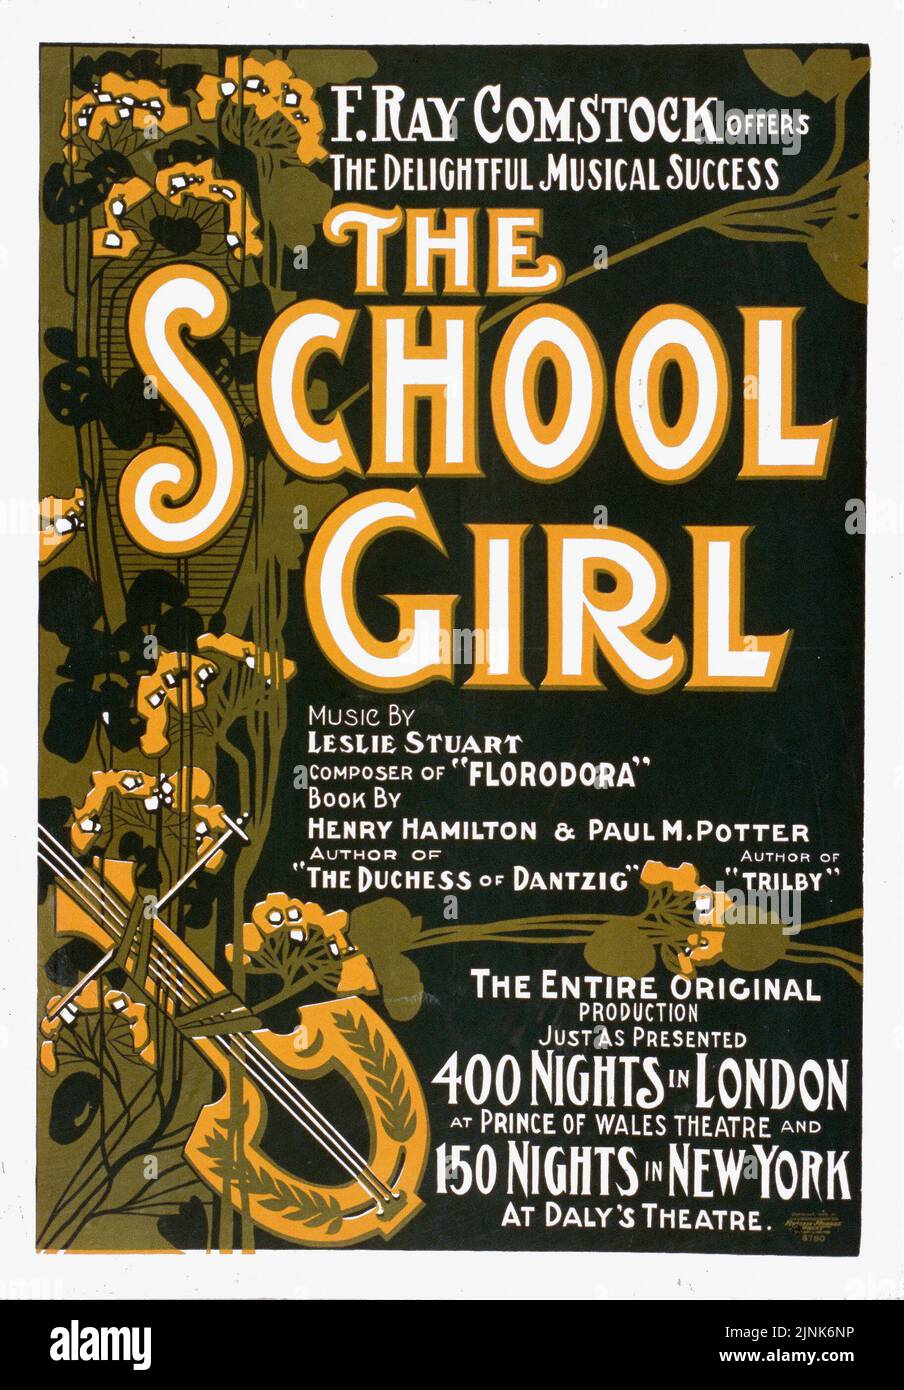 La fille de l'école (1905) F. Ray Comstock, musique de Leslie Stuart, Livre de Henry Hamilton et Paul M. Potter Banque D'Images